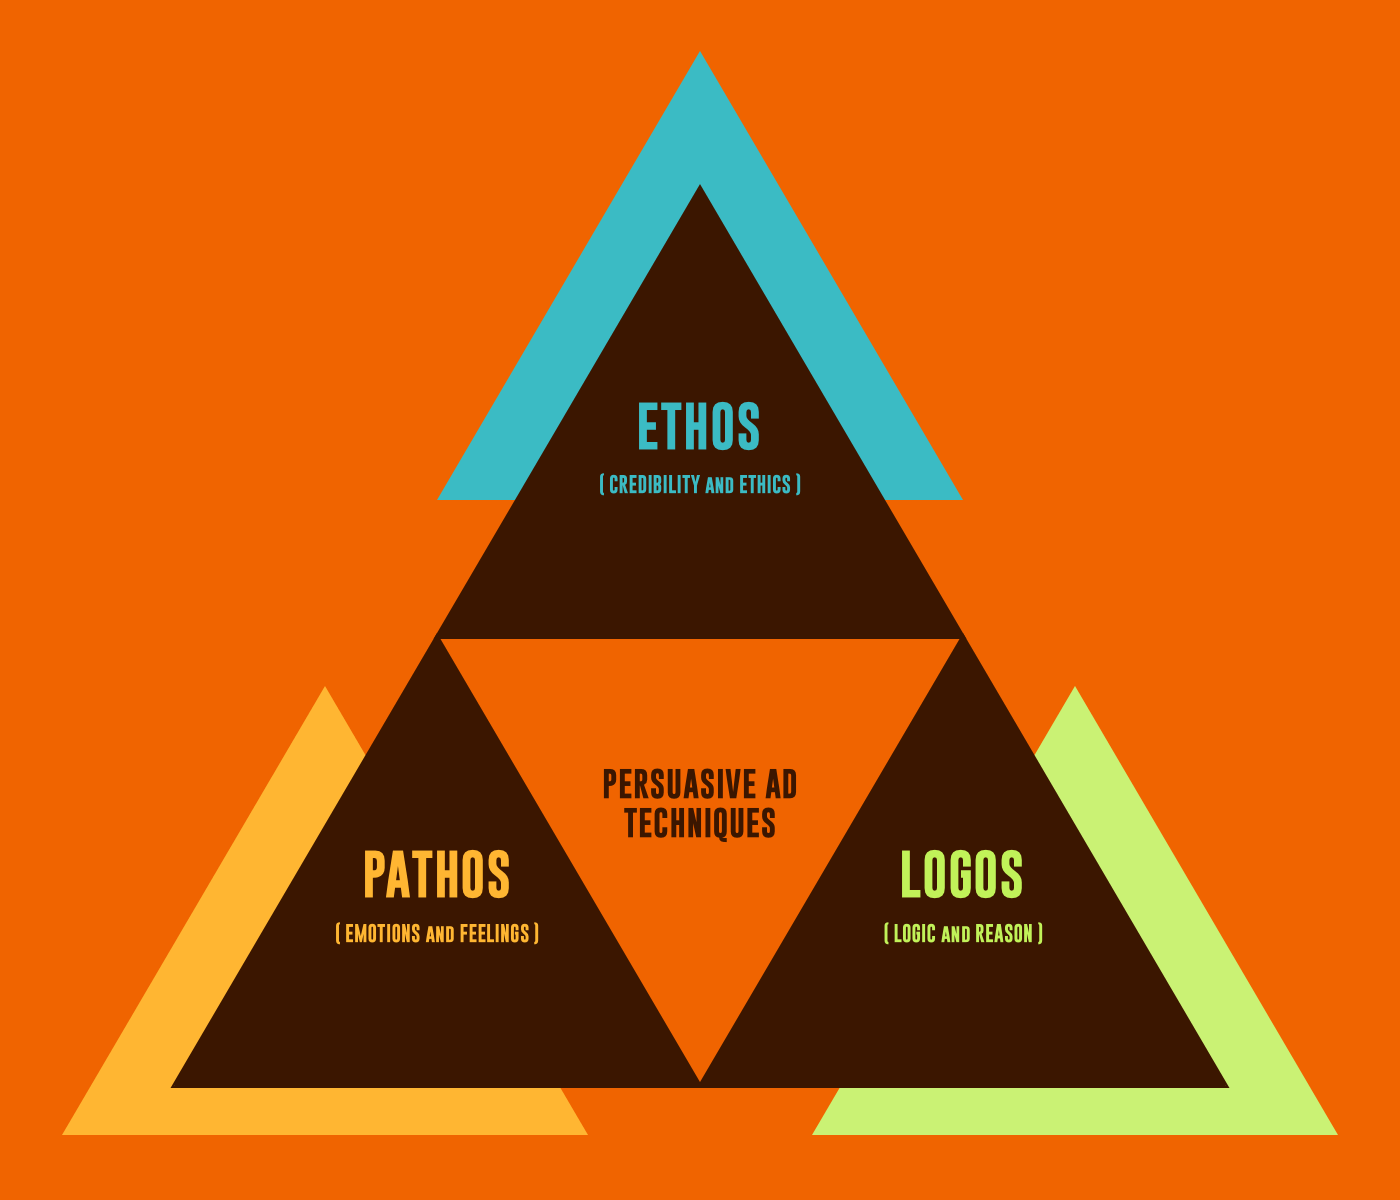 鼓舞人心的广告和商业广告 -  Ethos Pathos Logos三角形